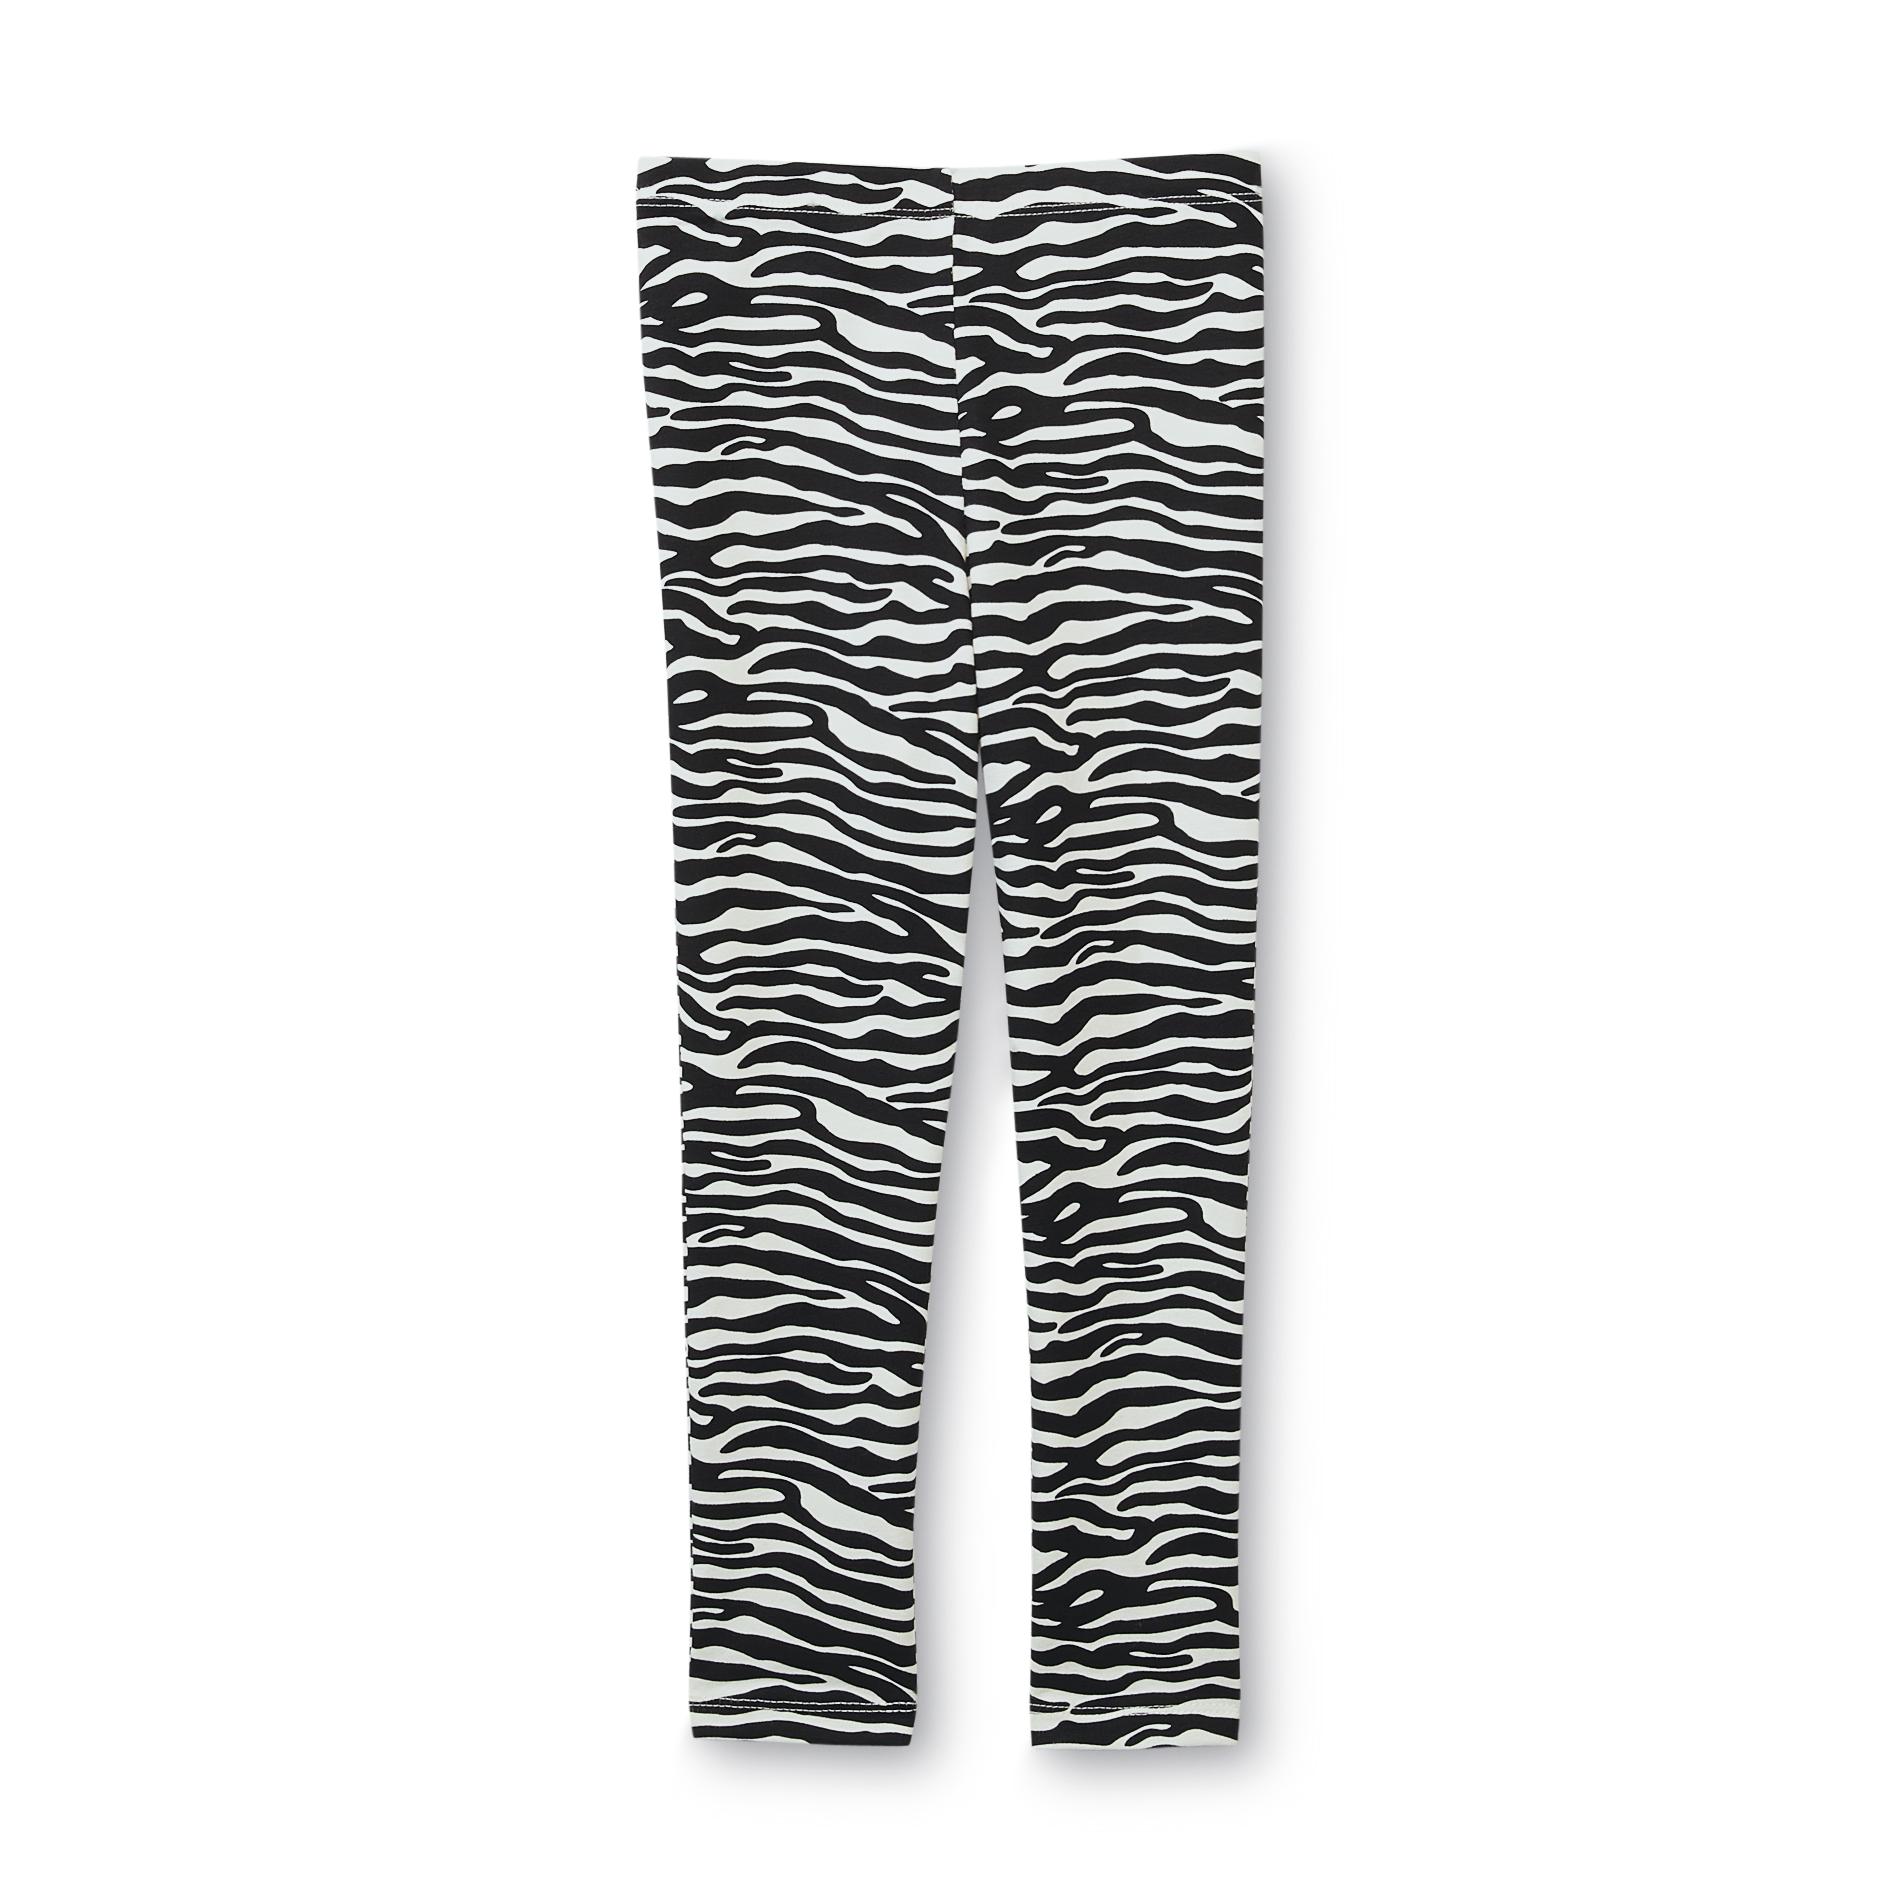 Toughskins Girl's Printed Leggings - Zebra